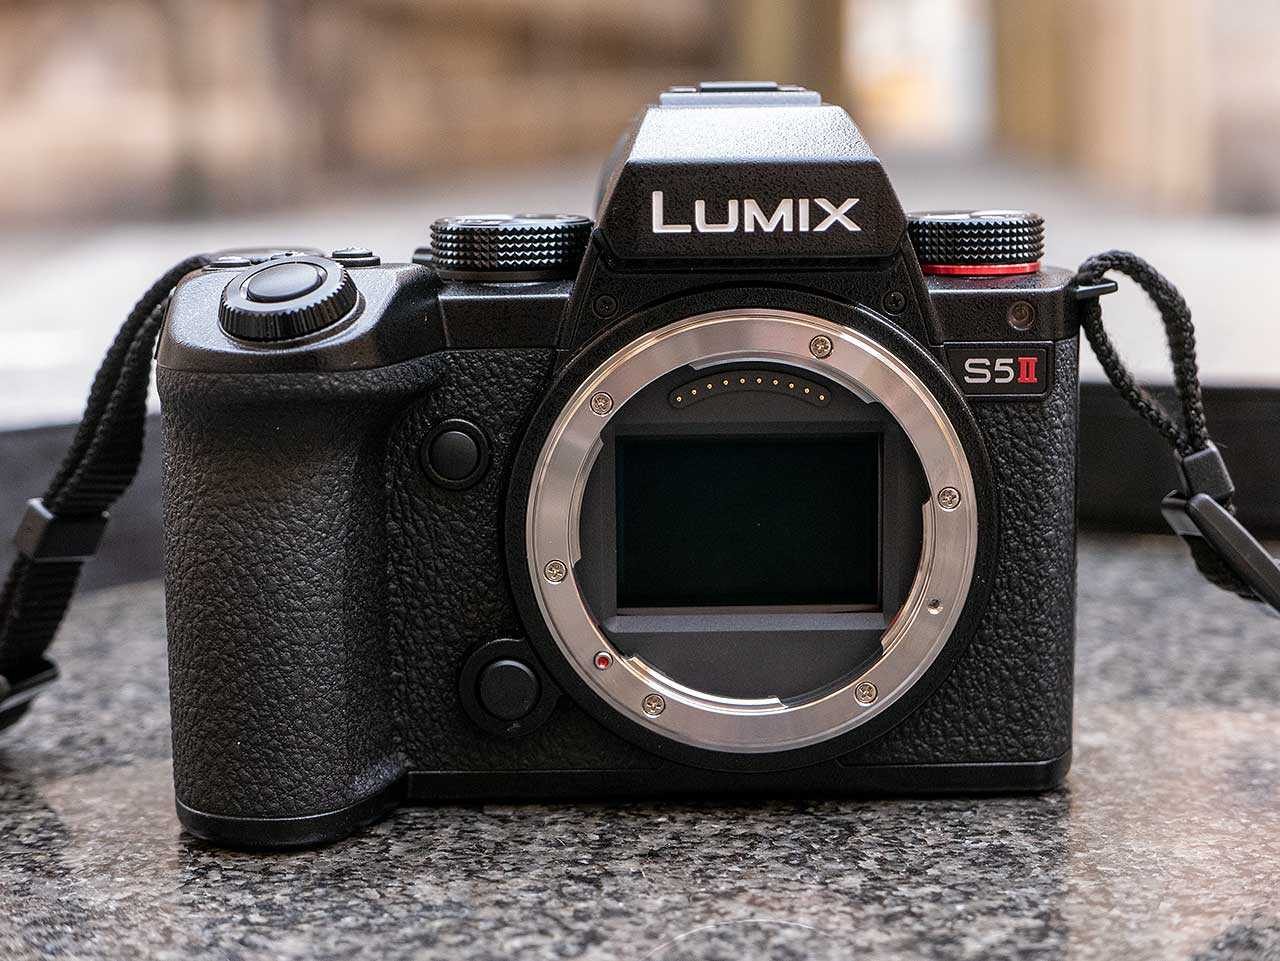 Panasonic Lumix S5 Mirrorless Camera with LUMIX S S50 50mm f/1.8 Lens